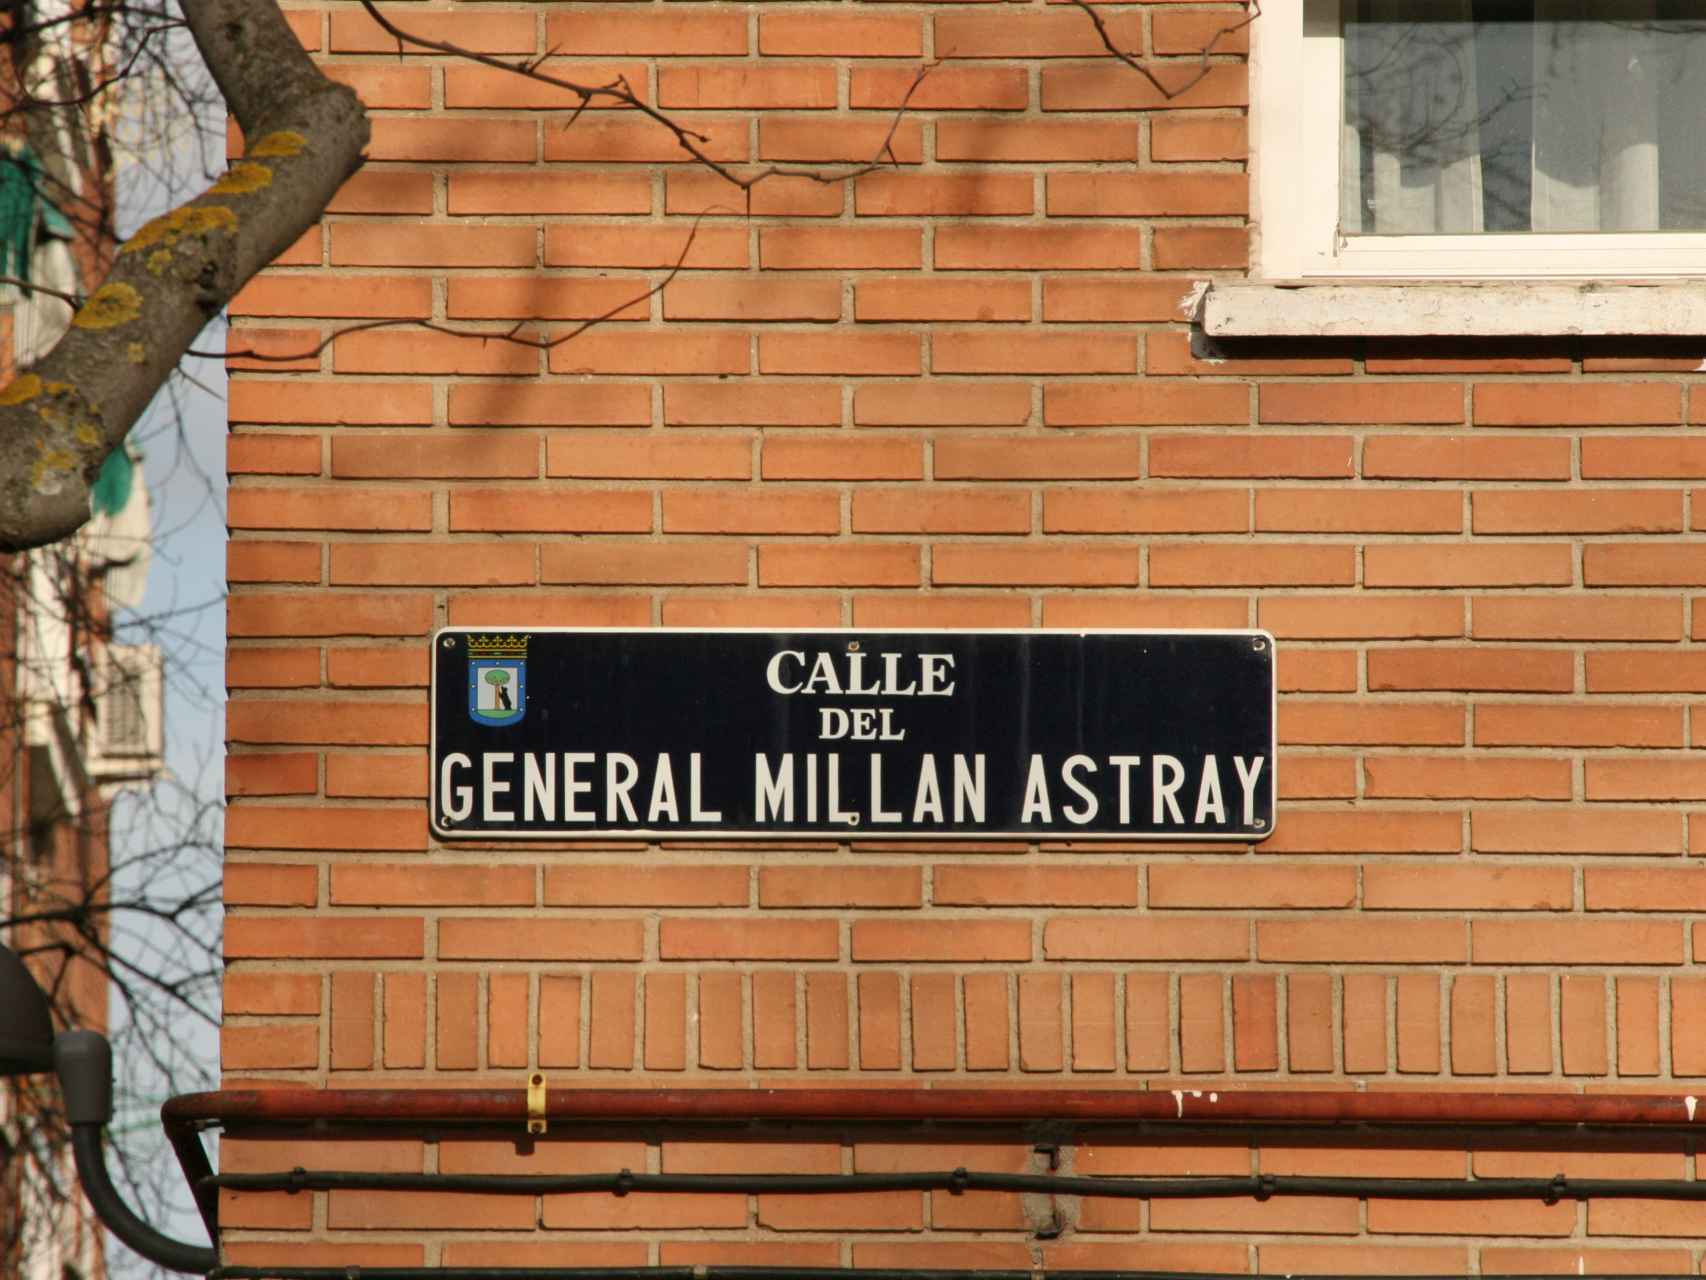 Placa de la Calle General Millán Astray en Madrid.